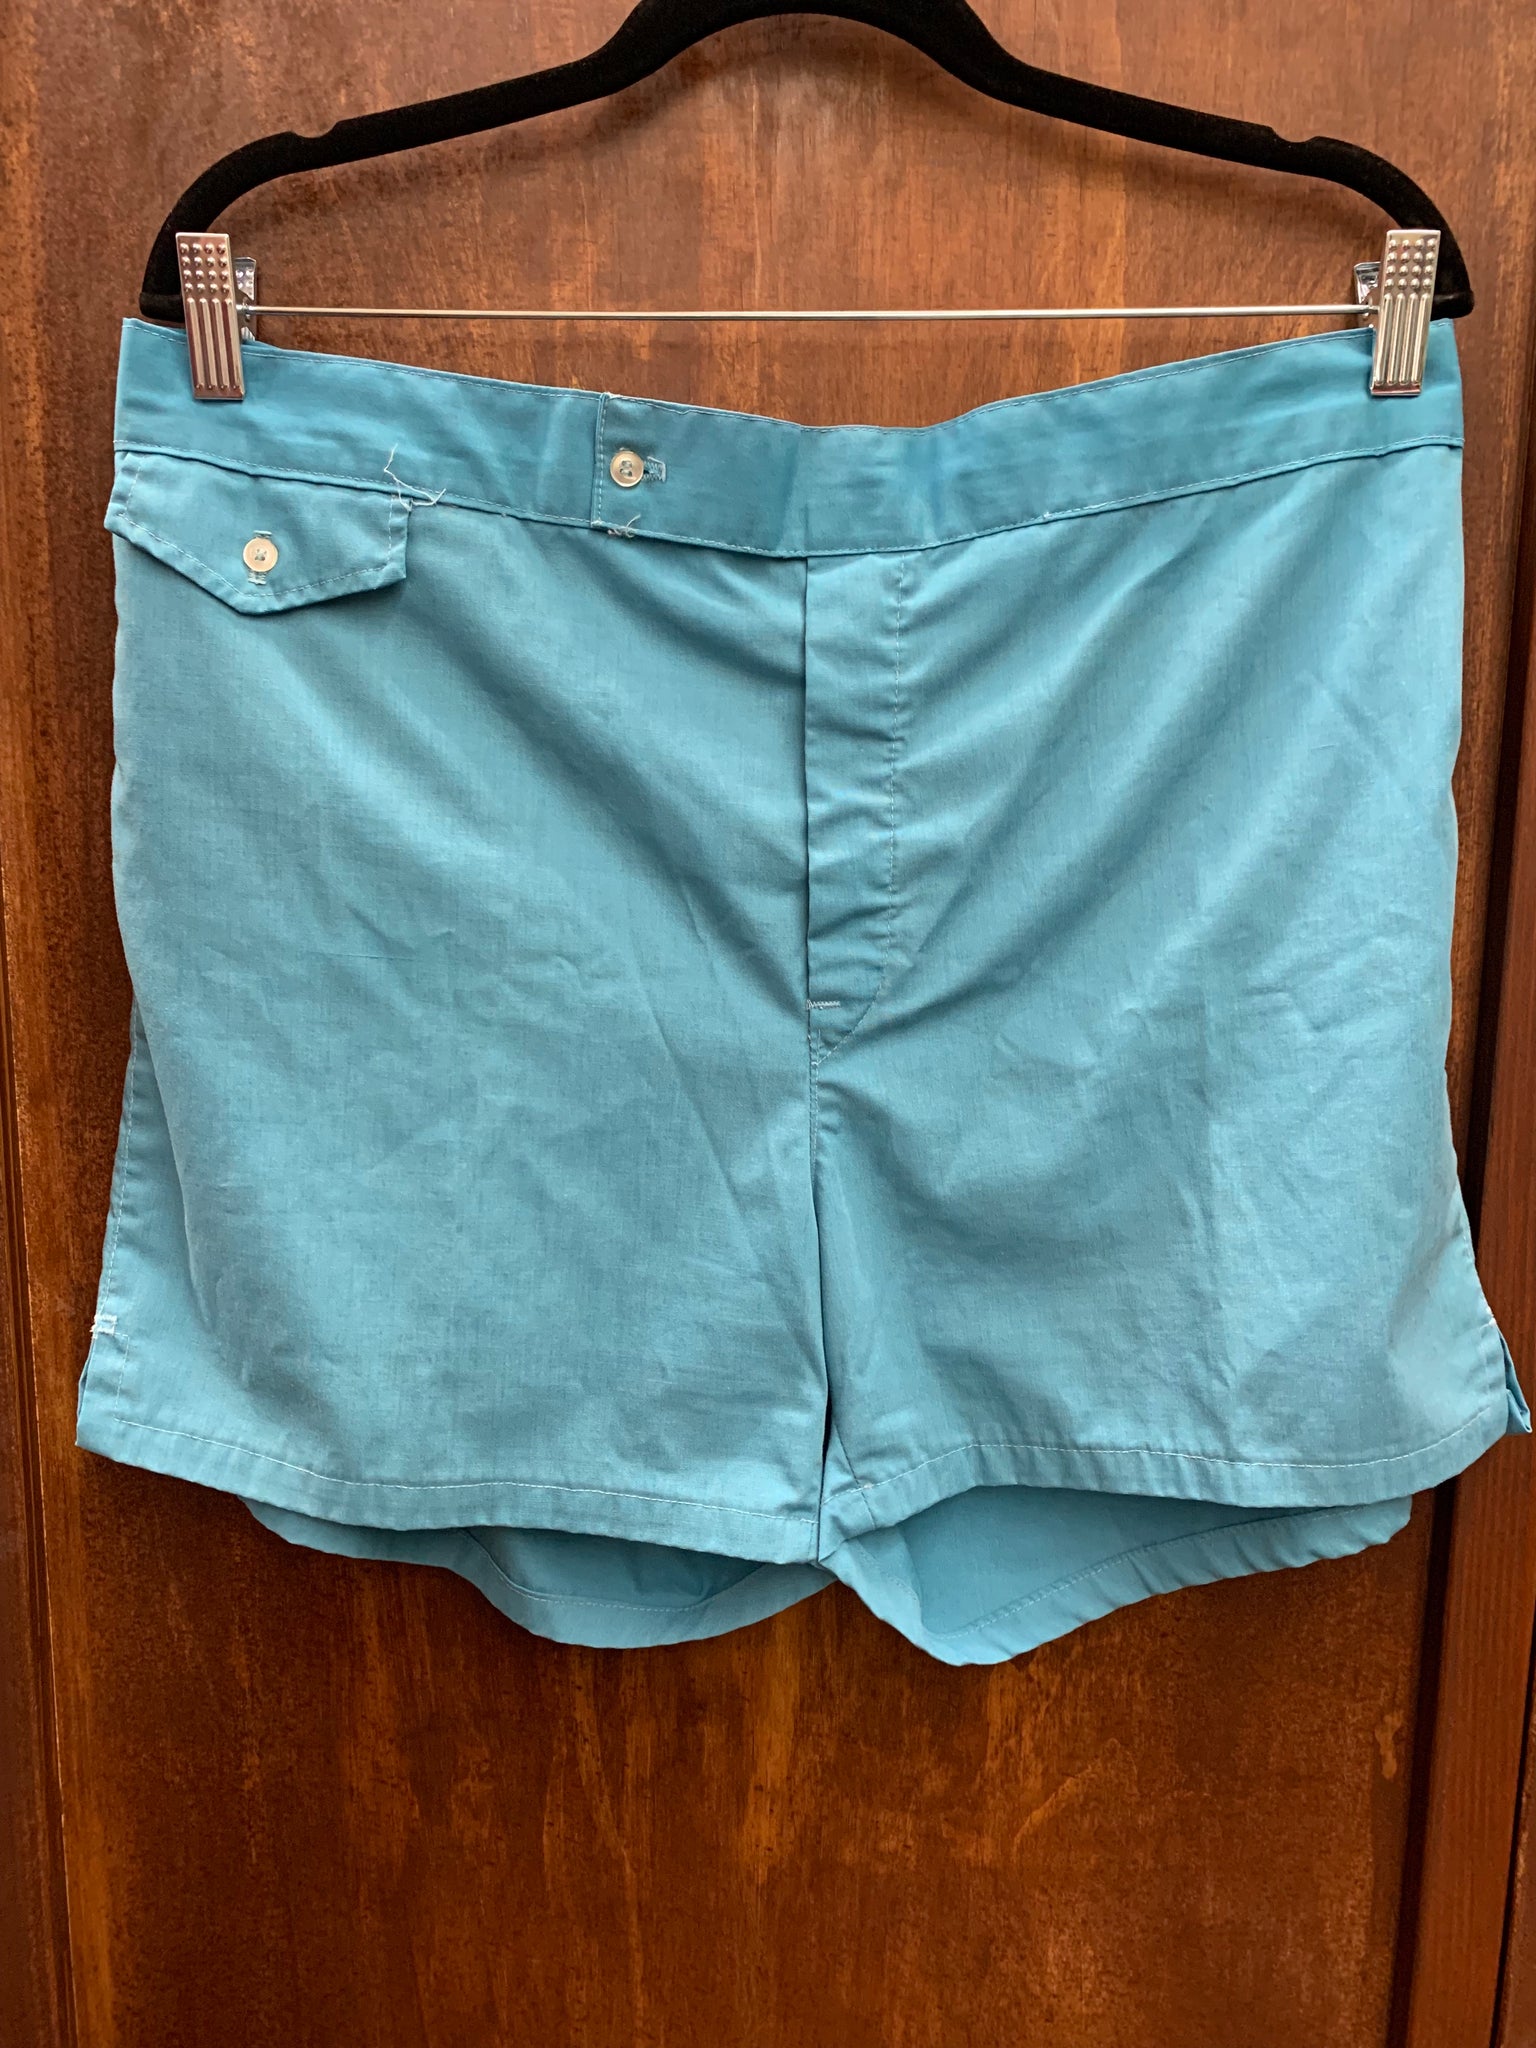 1960s MENS SHORTS- cornflower blue bathing shorts